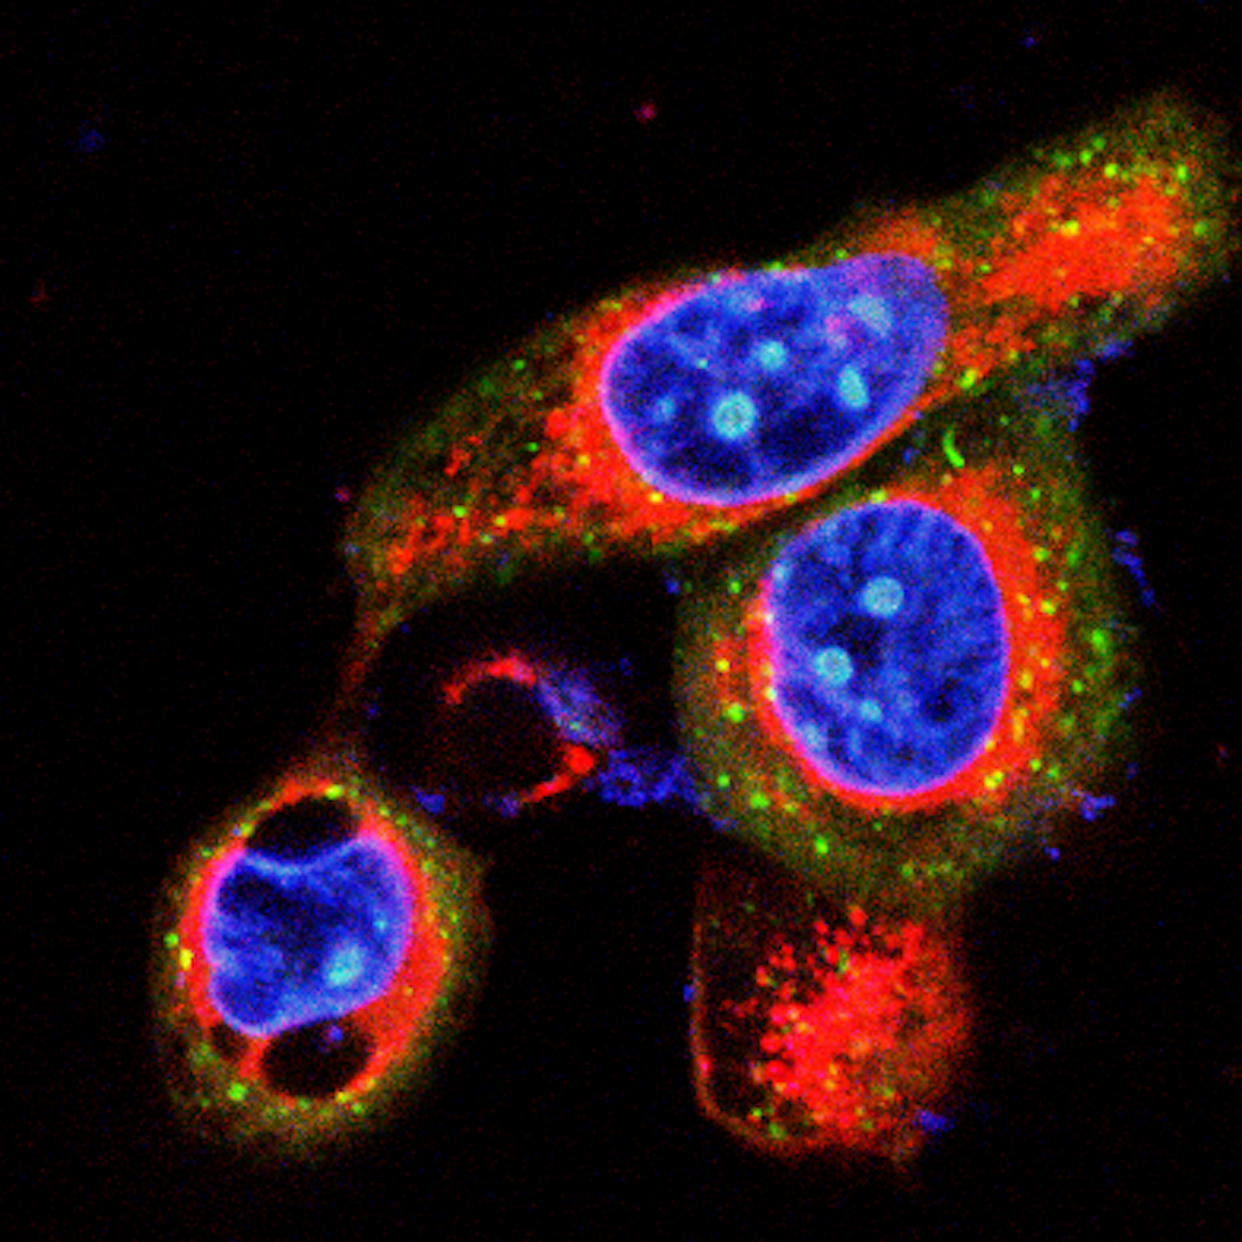 Células de cáncer de páncreas en proceso de autofagia. Imagen obtenida por nuestro grupo de investigación. Author provided